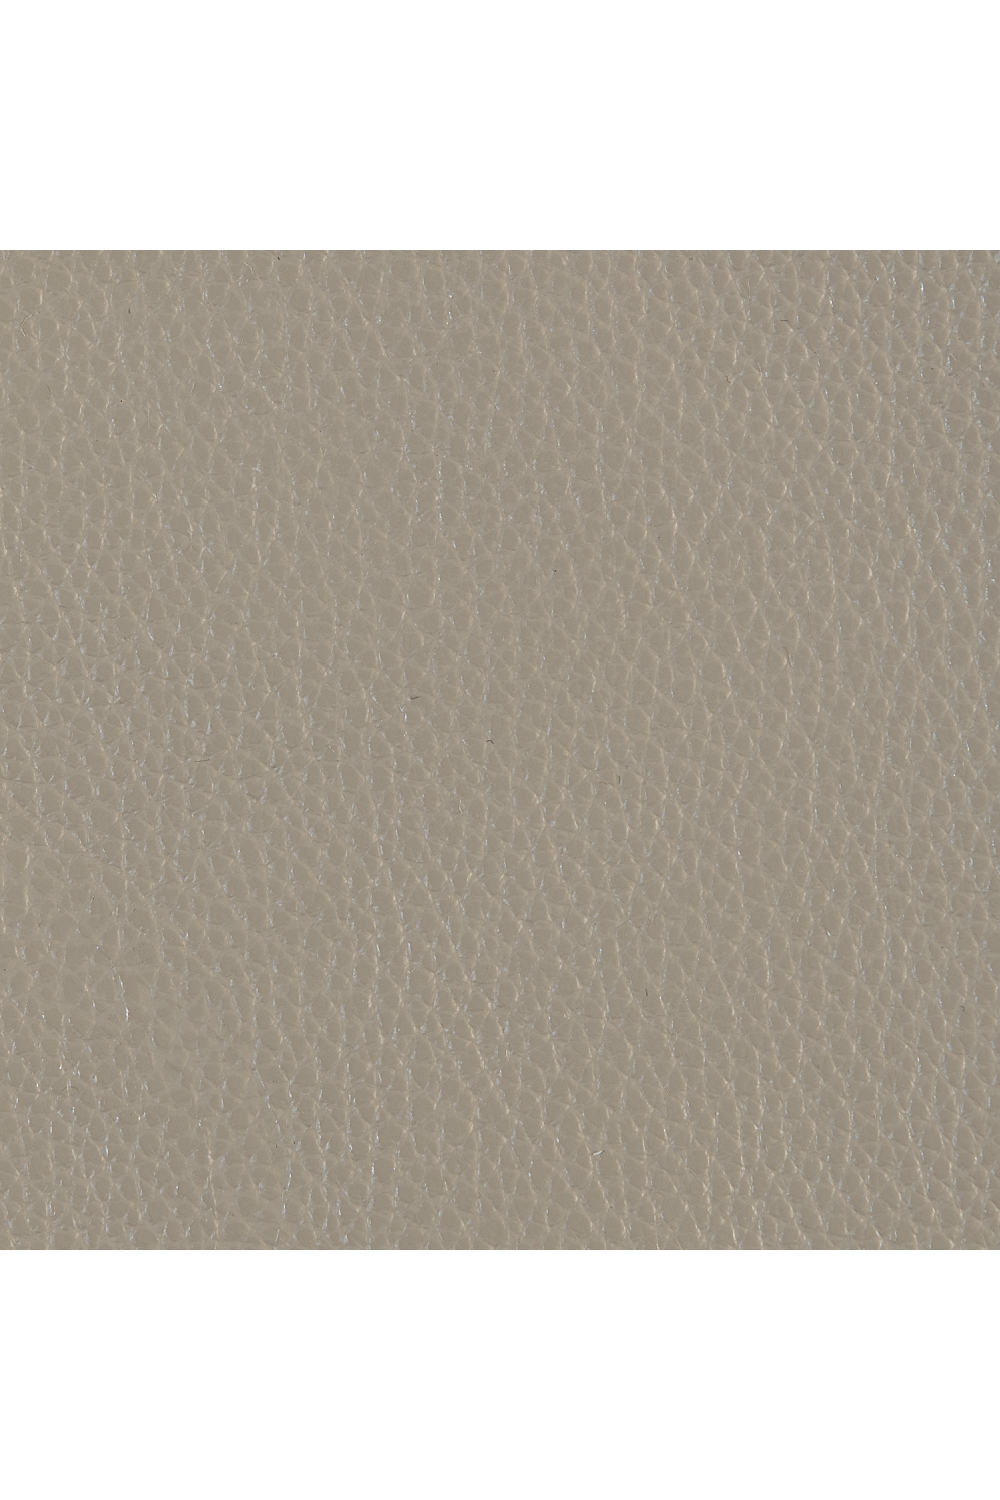 Taupe Leather Side Table | Caracole Bindi | Oroa.com